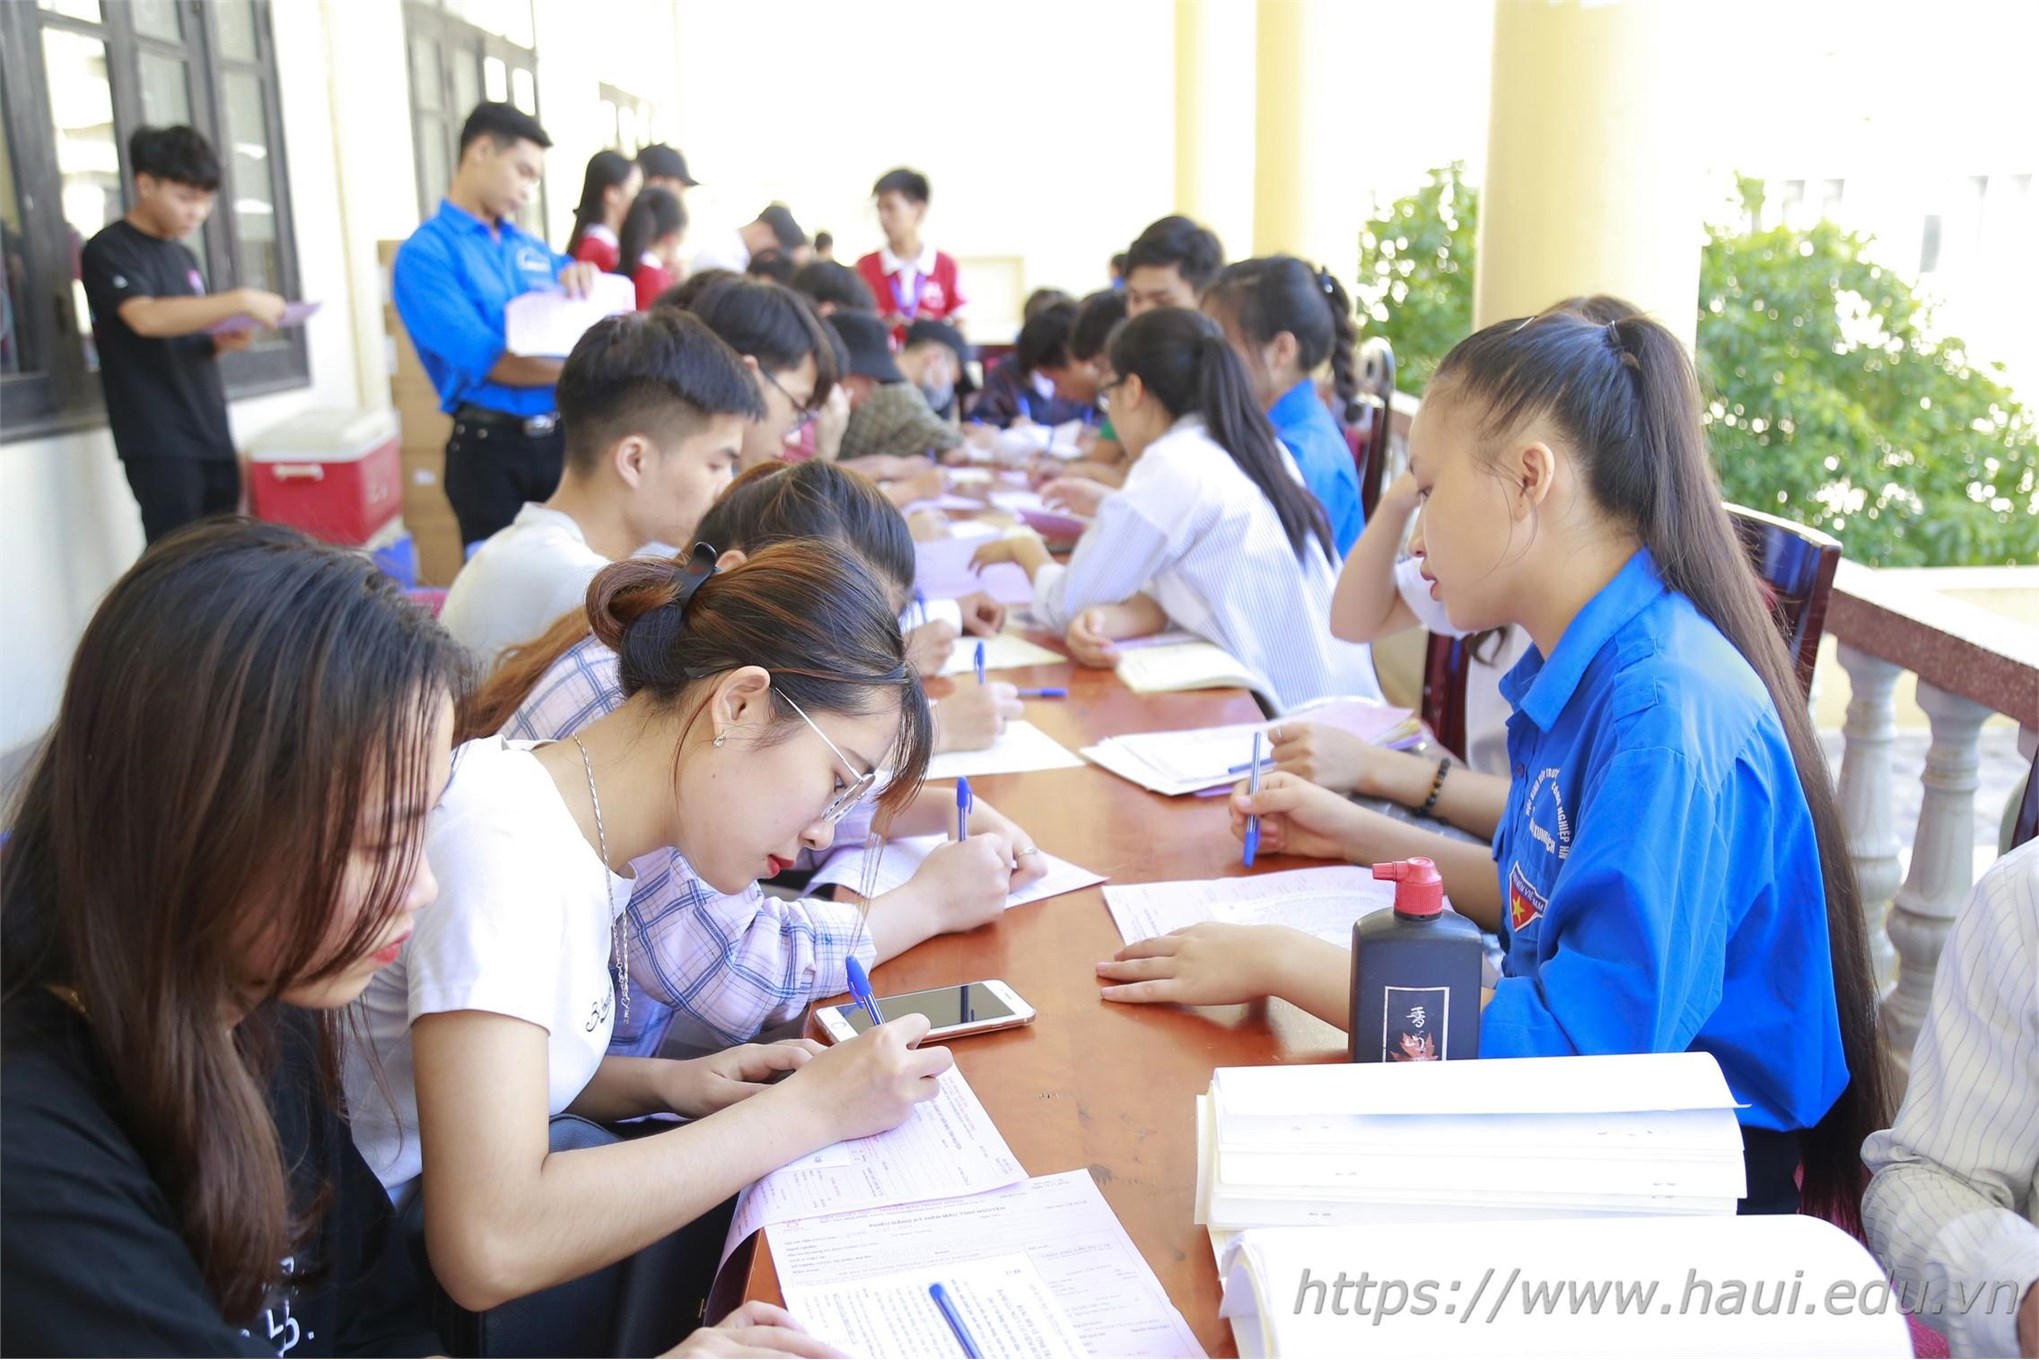 Tuổi trẻ Trường Đại học Công nghiệp Hà Nội hiến tặng 843 đơn vị máu tại Ngày hội Cầu vồng nhân ái năm 2020